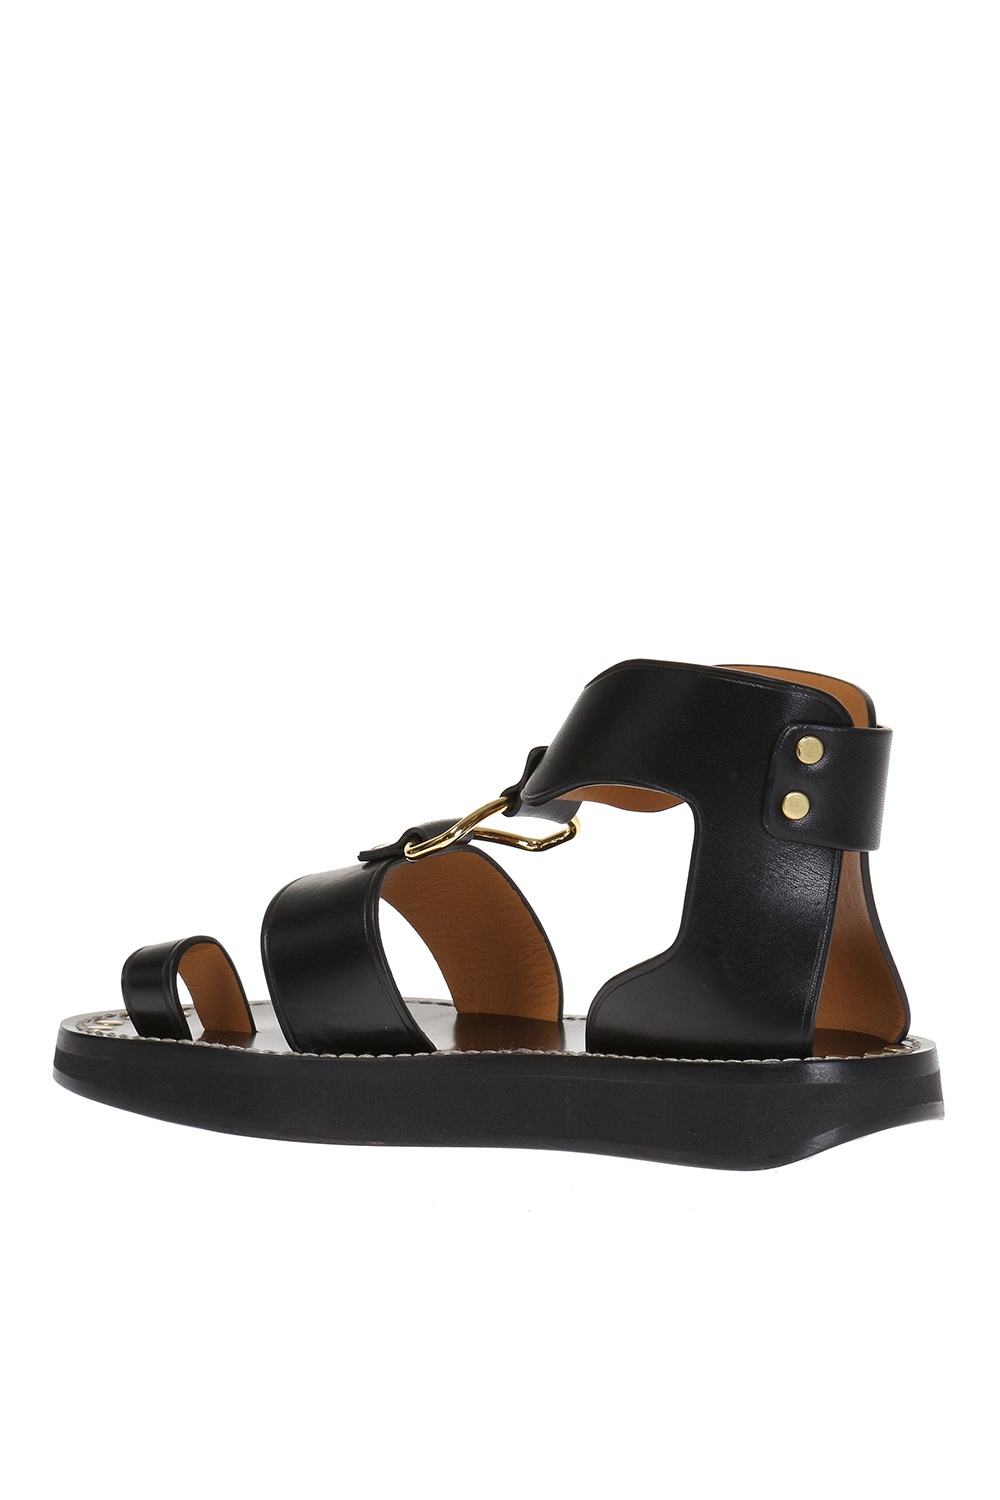 'Nindle' sandals Isabel Marant - Vitkac GB